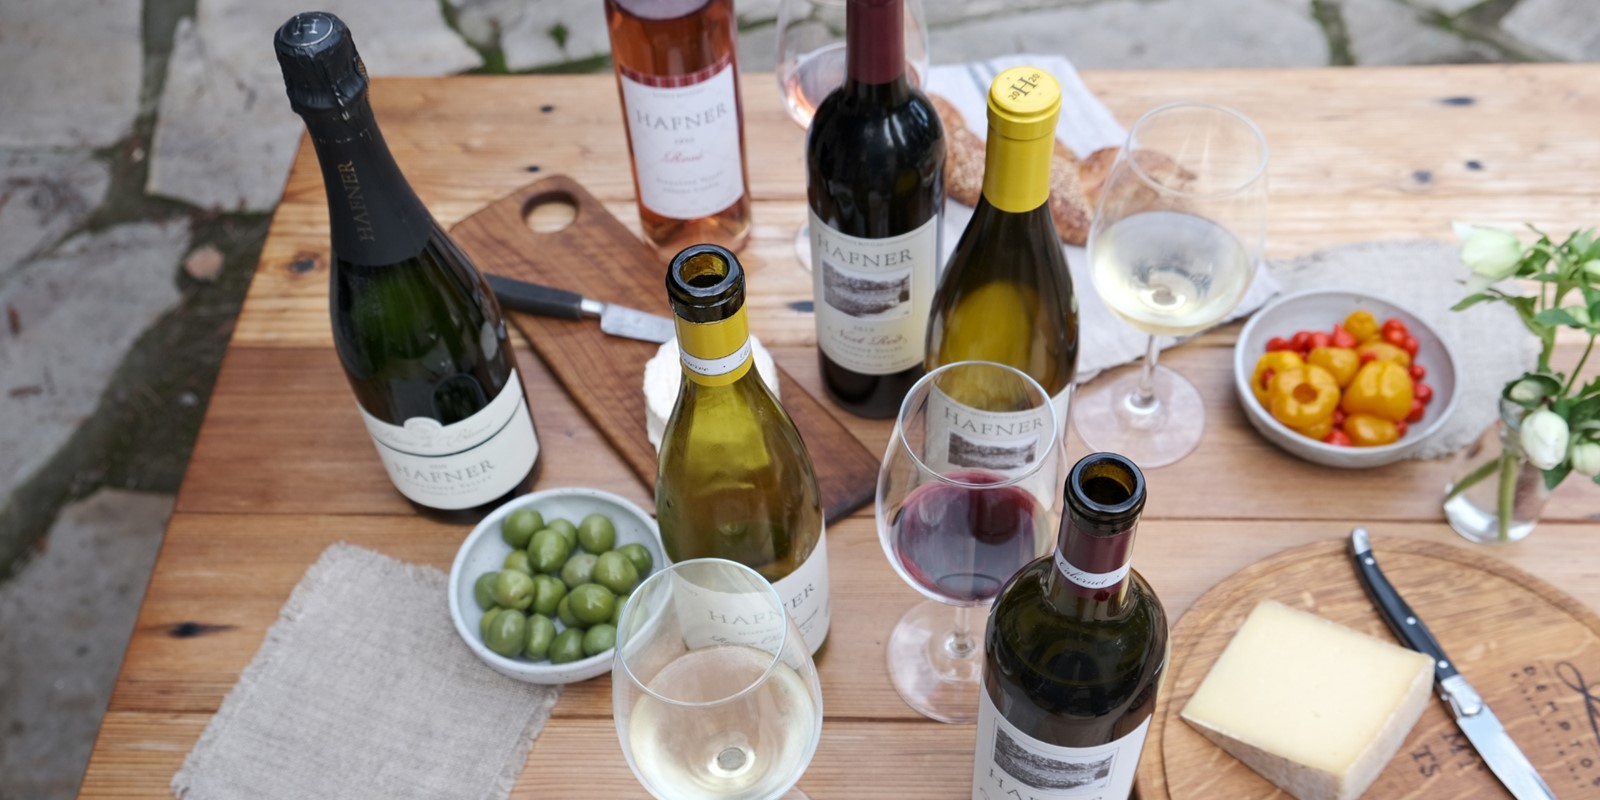 Hafner Vineyard Wines